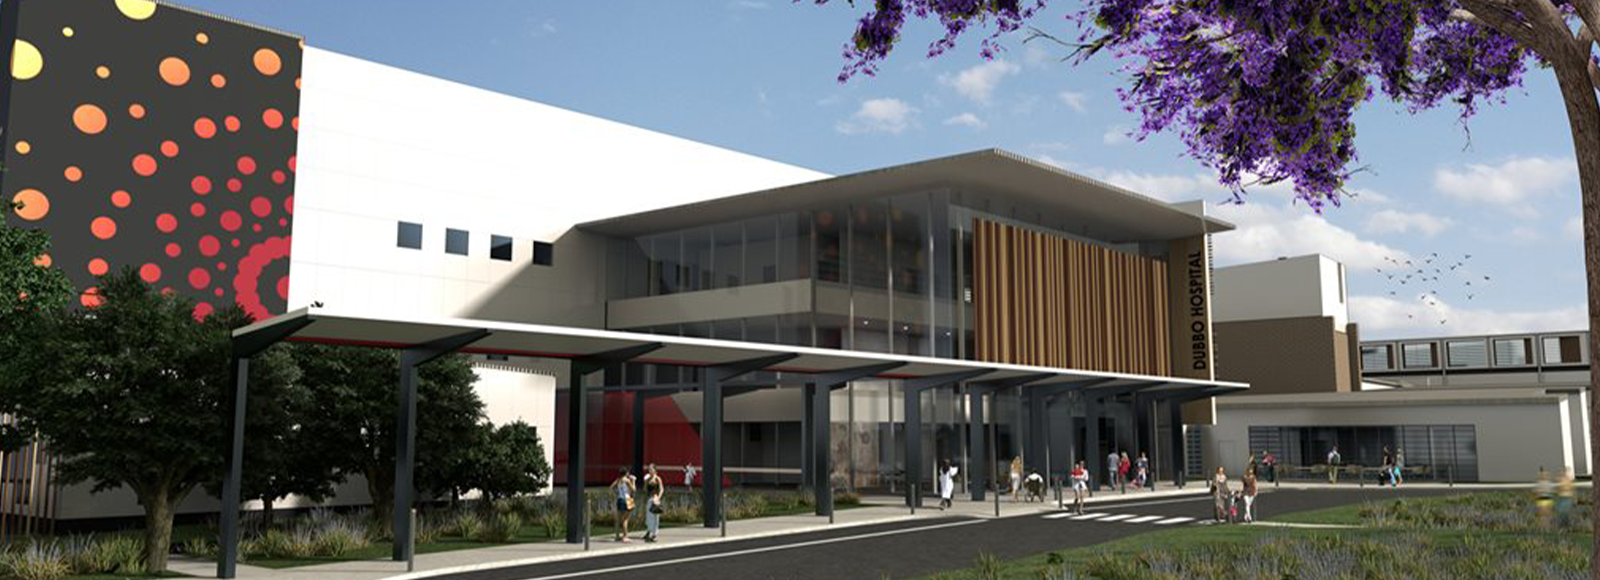 Dubbo Base Hospital Redevelopment 